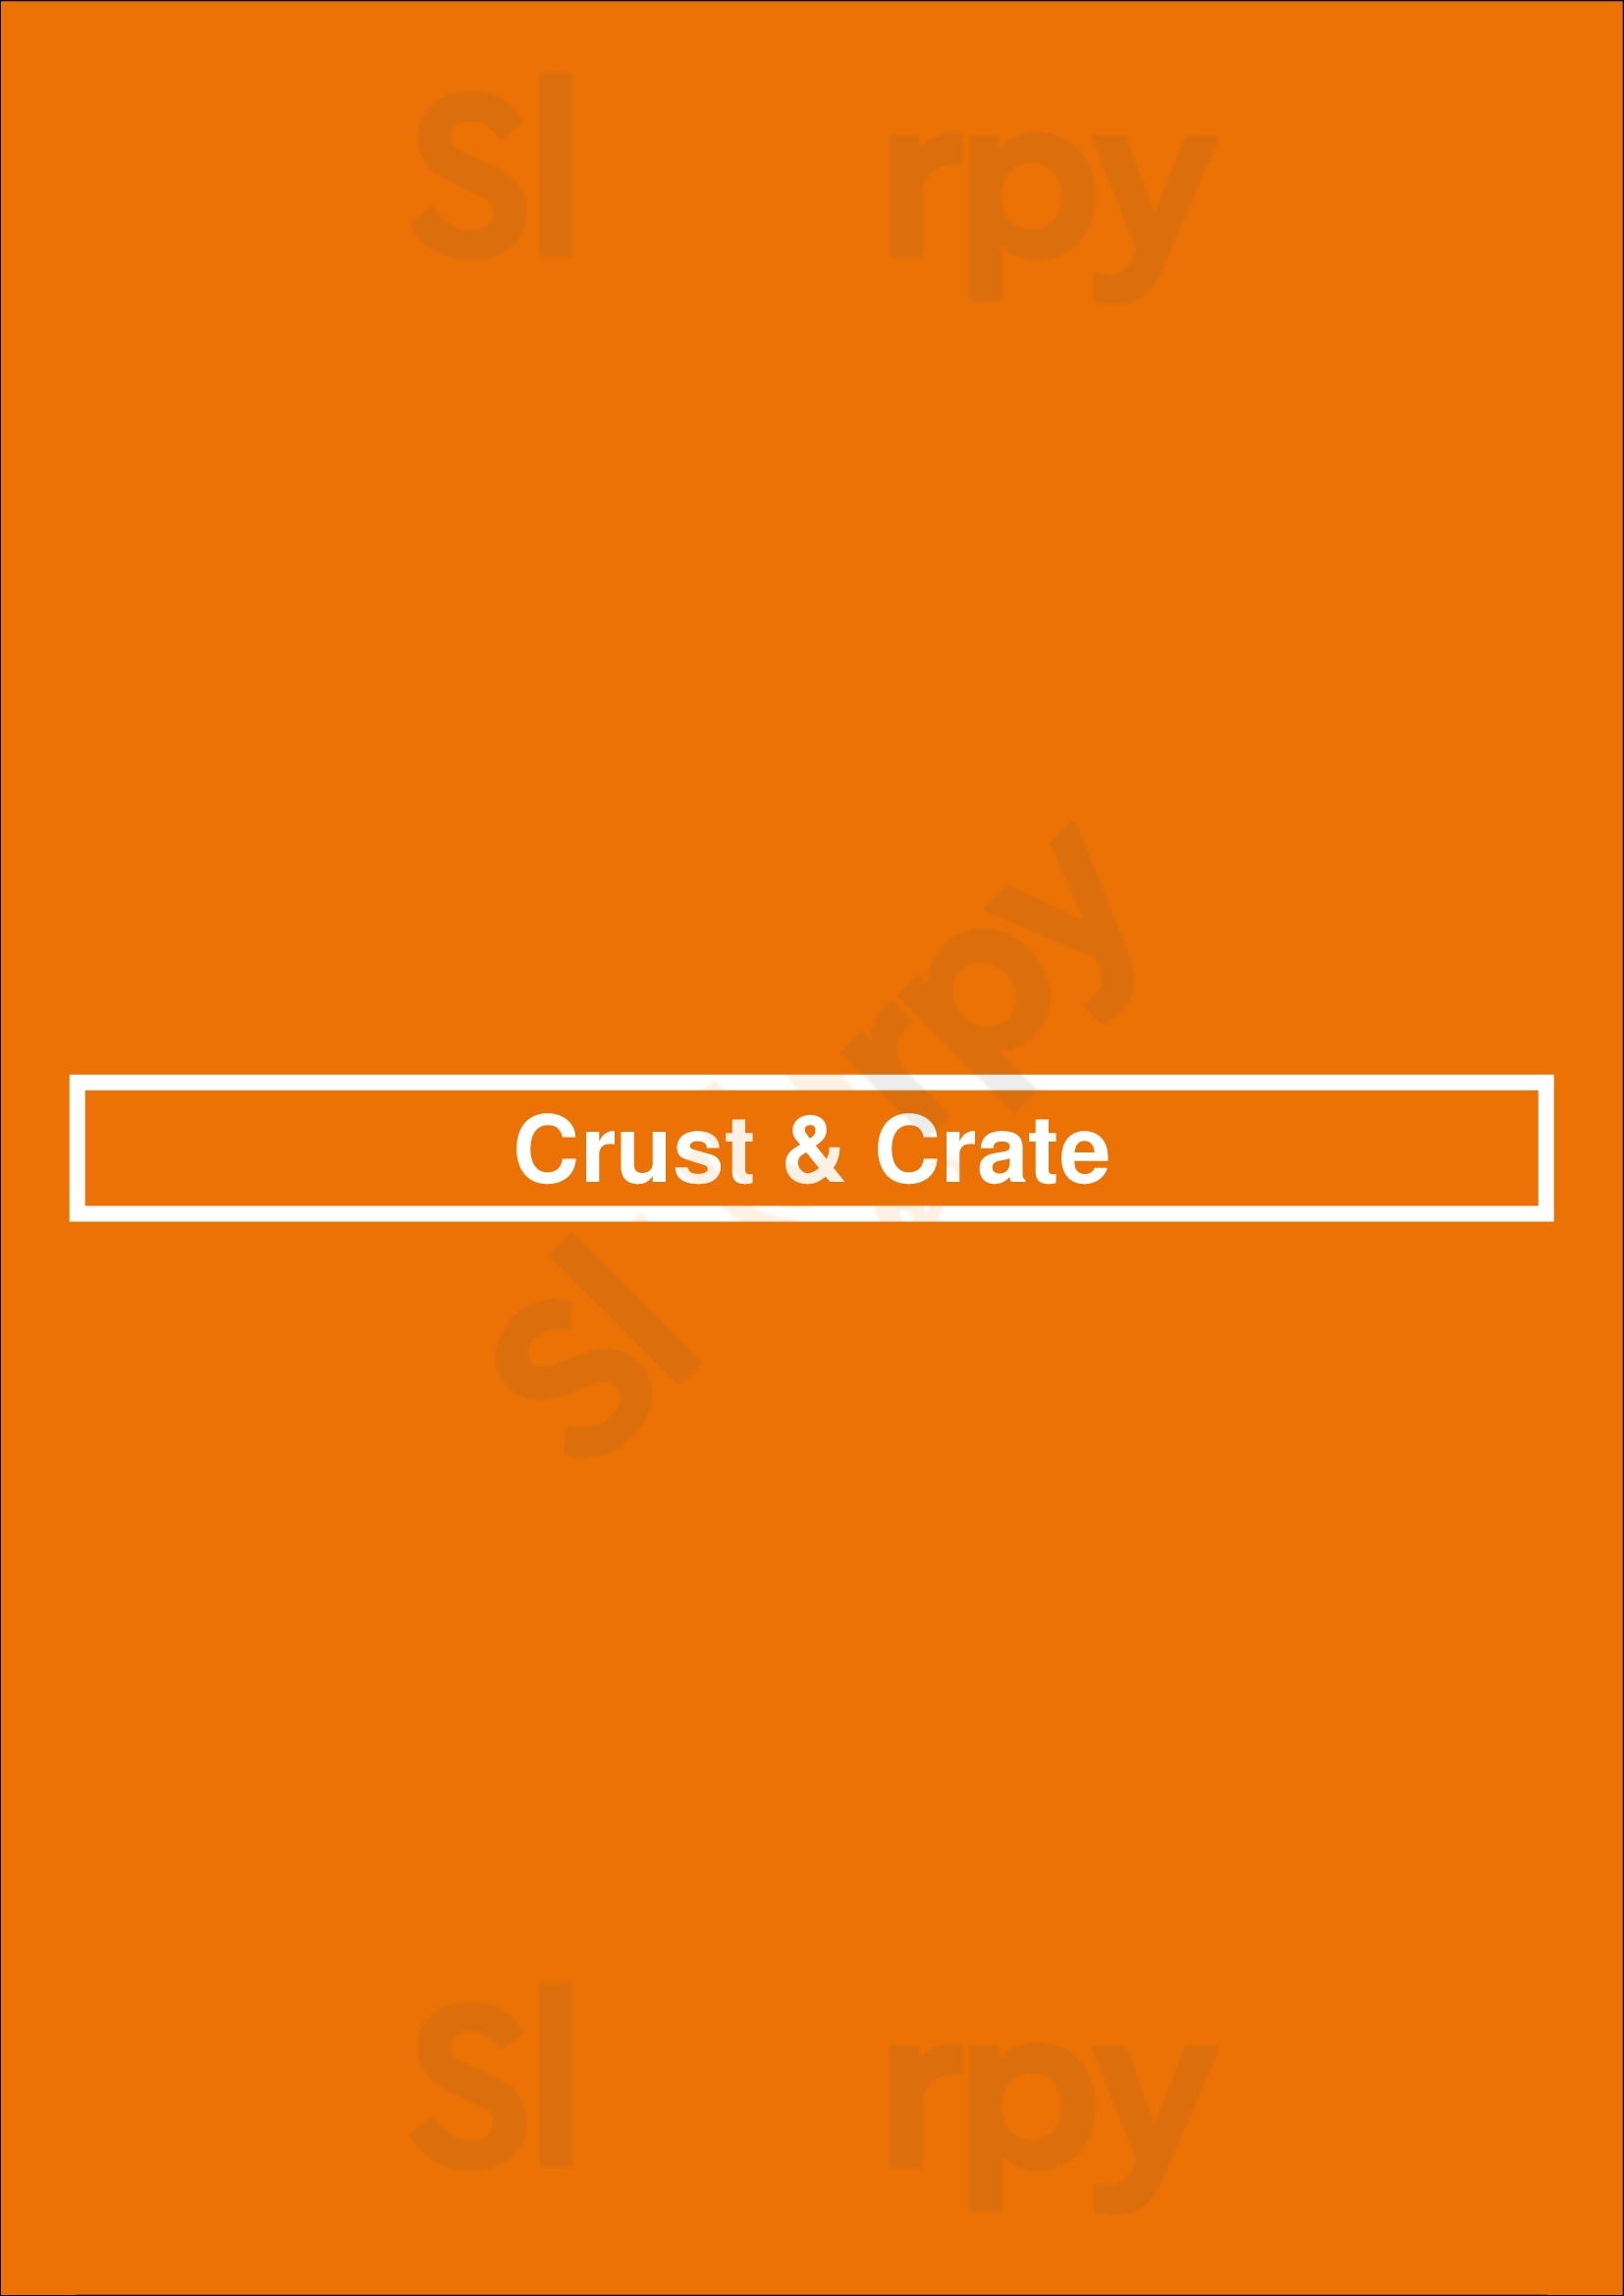 Crust & Crate Ottawa Menu - 1